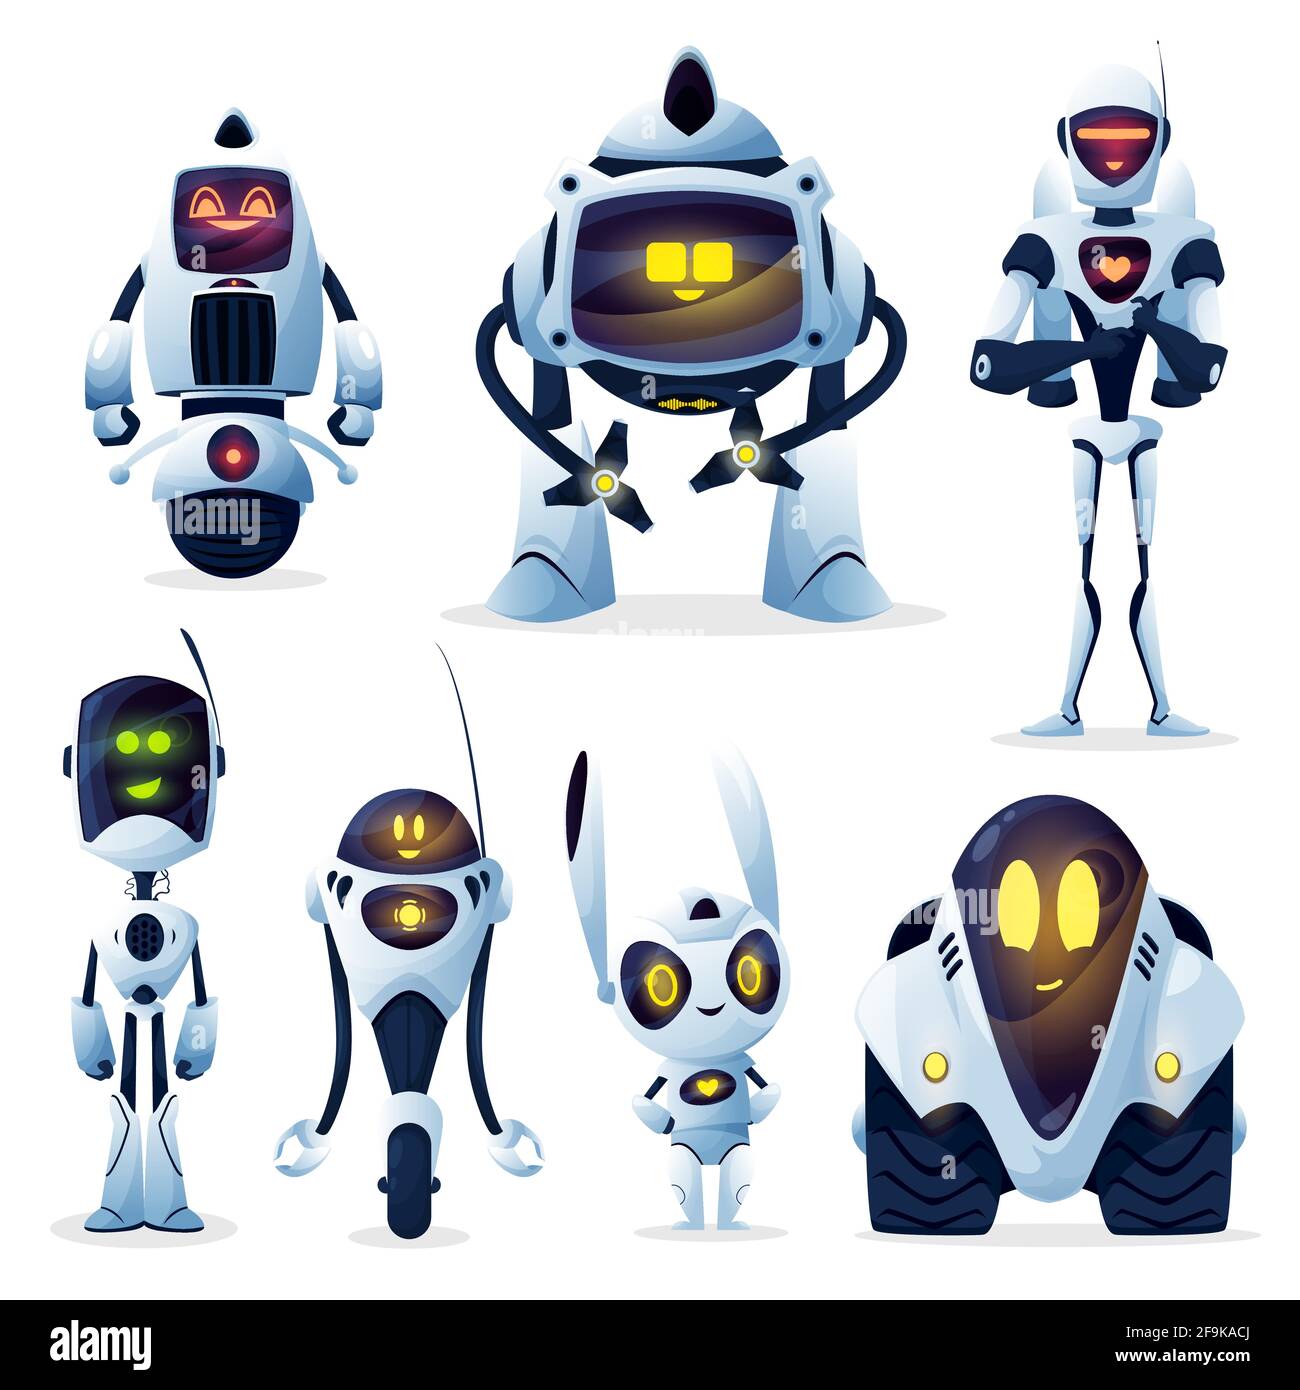 Robot e android bot, cartoni animati, vettori ai cyborg. Robot cyborg  macchine con intelligenza artificiale digitale e bracci meccanici, co  Immagine e Vettoriale - Alamy